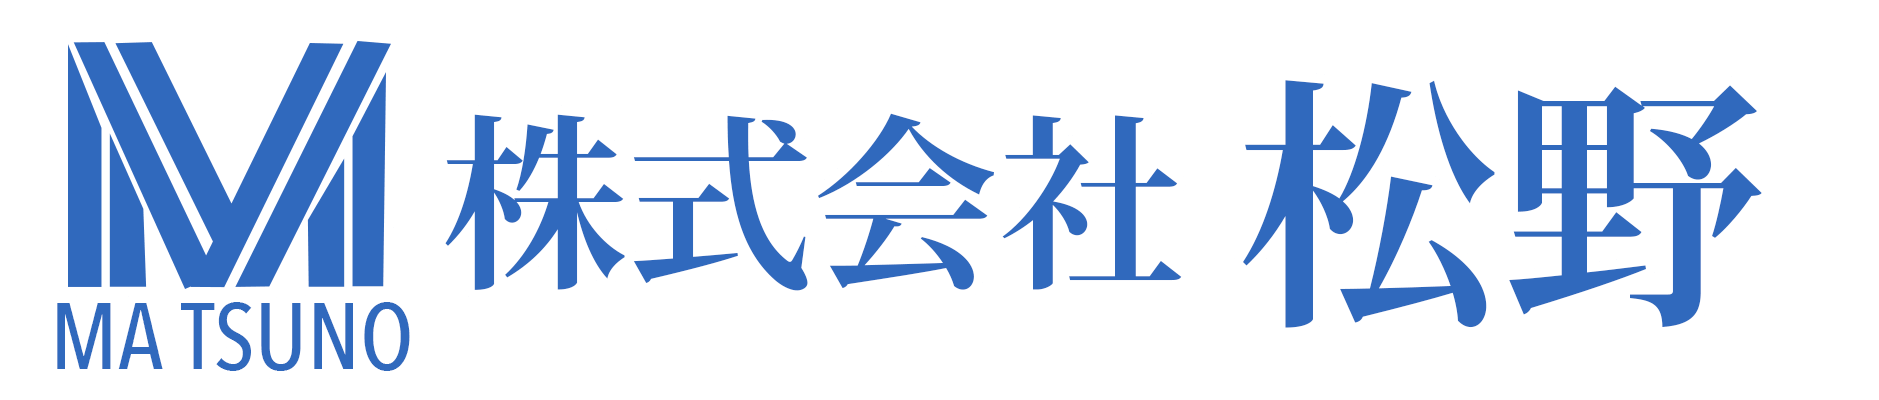 福岡県嘉麻市で土木工事をメインとし、伐採工事、舗装工事、解体工事を行っている株式会社松野のロゴ